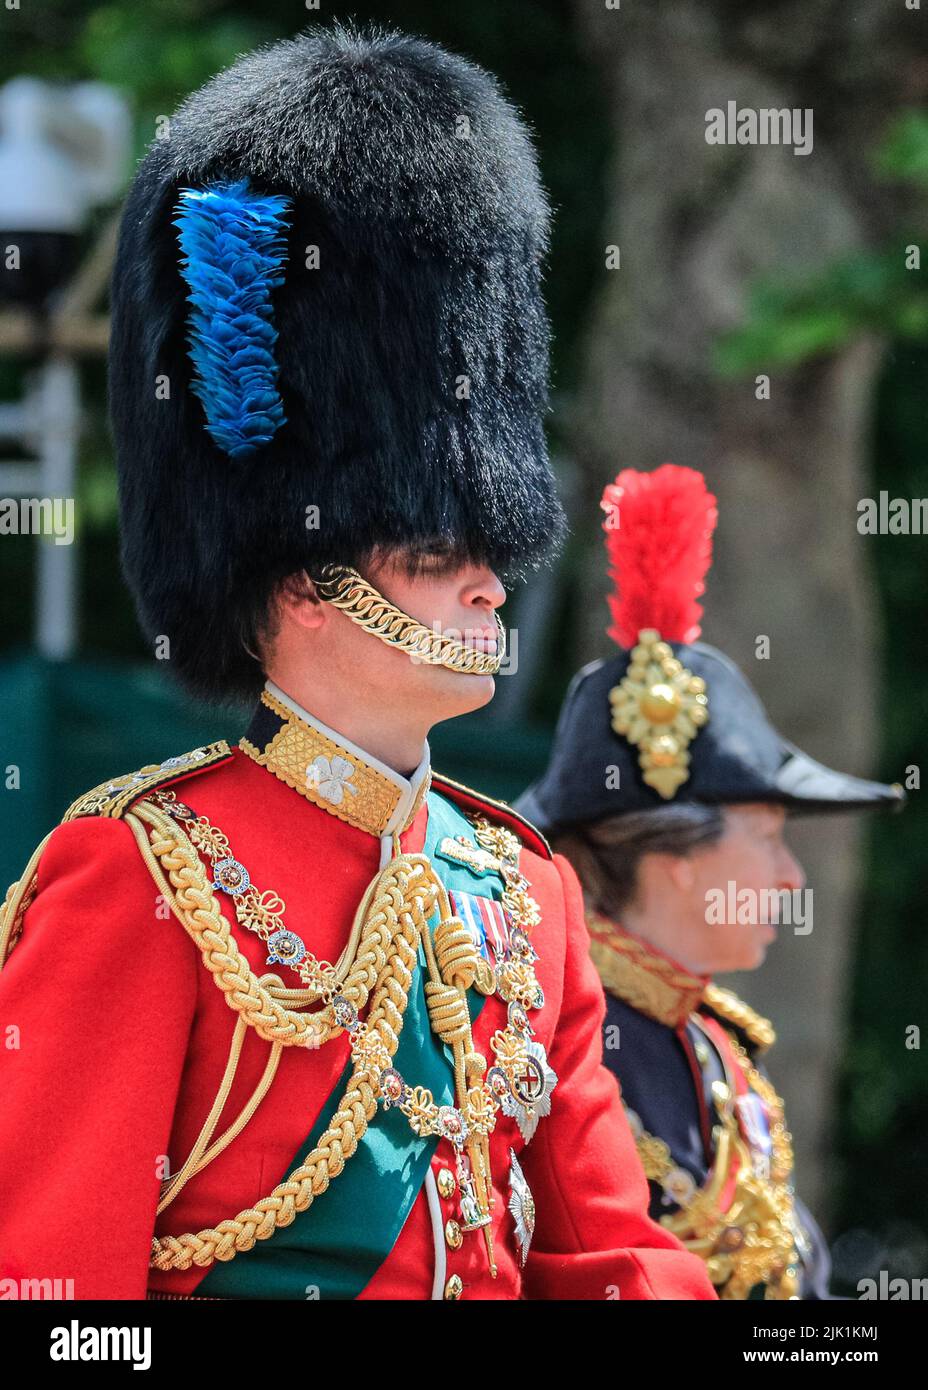 William, Herzog von Cambridge, zu Pferd in Militäruniform, Platinum Jubilee Trooping the Color Parade, London Stockfoto